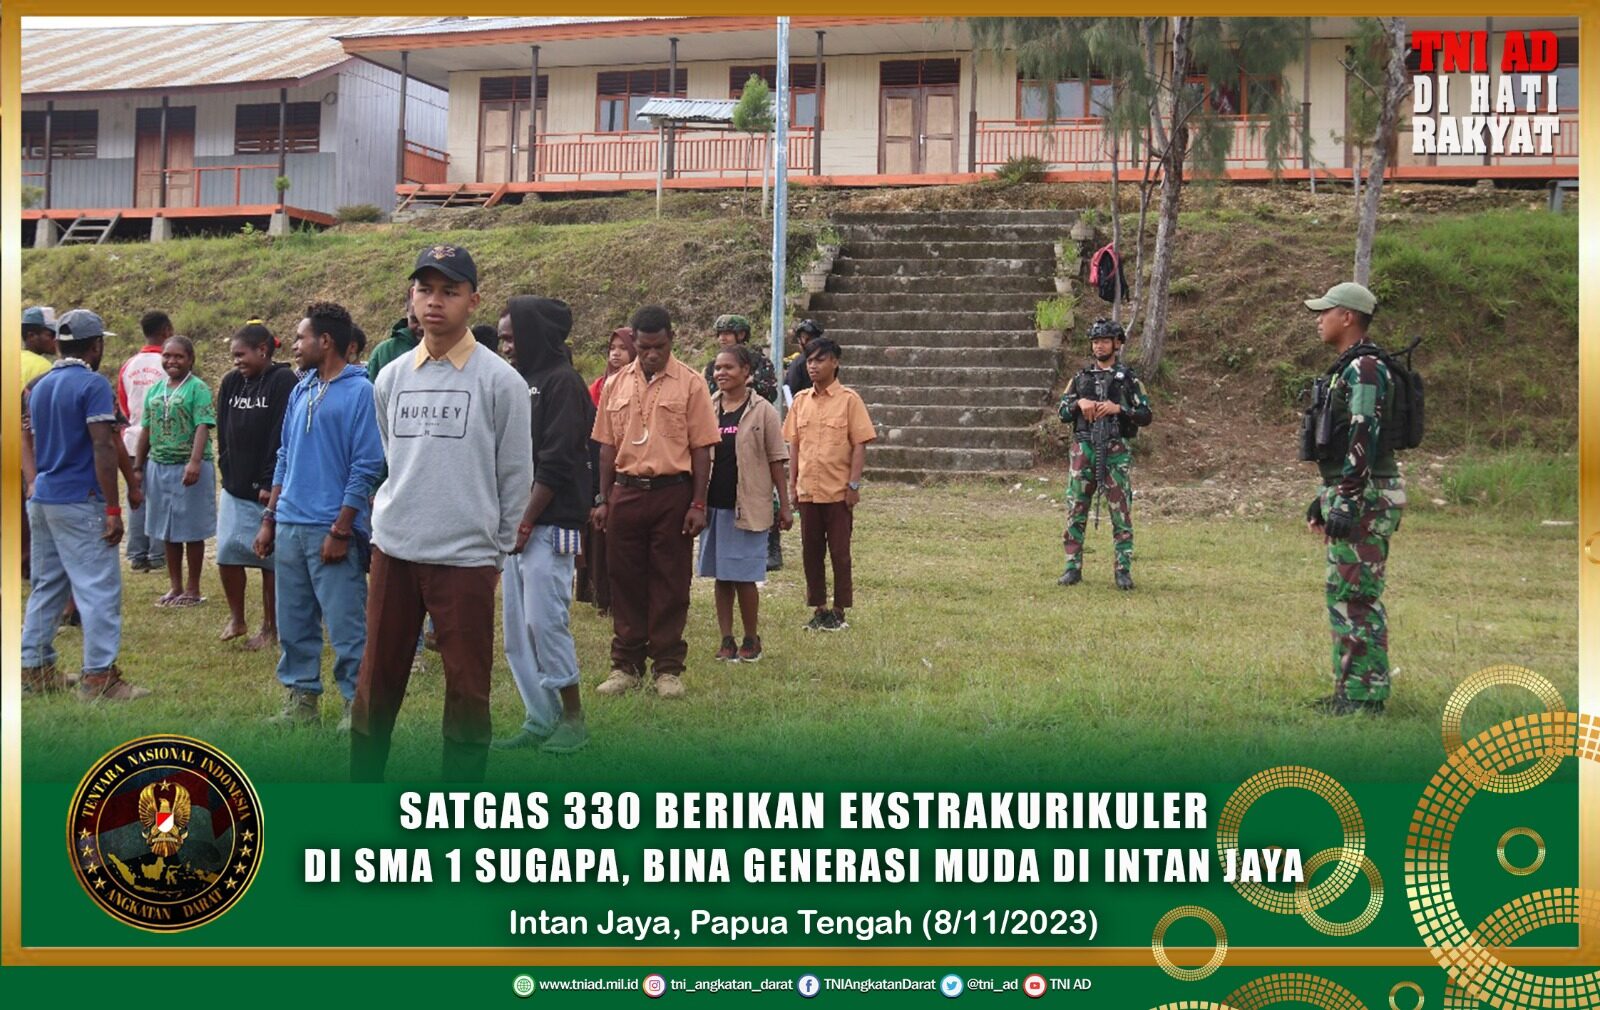 Satgas 330 Berikan Ekstrakurikuler di SMA 1 Sugapa, Bina Generasi Muda di Intan Jaya